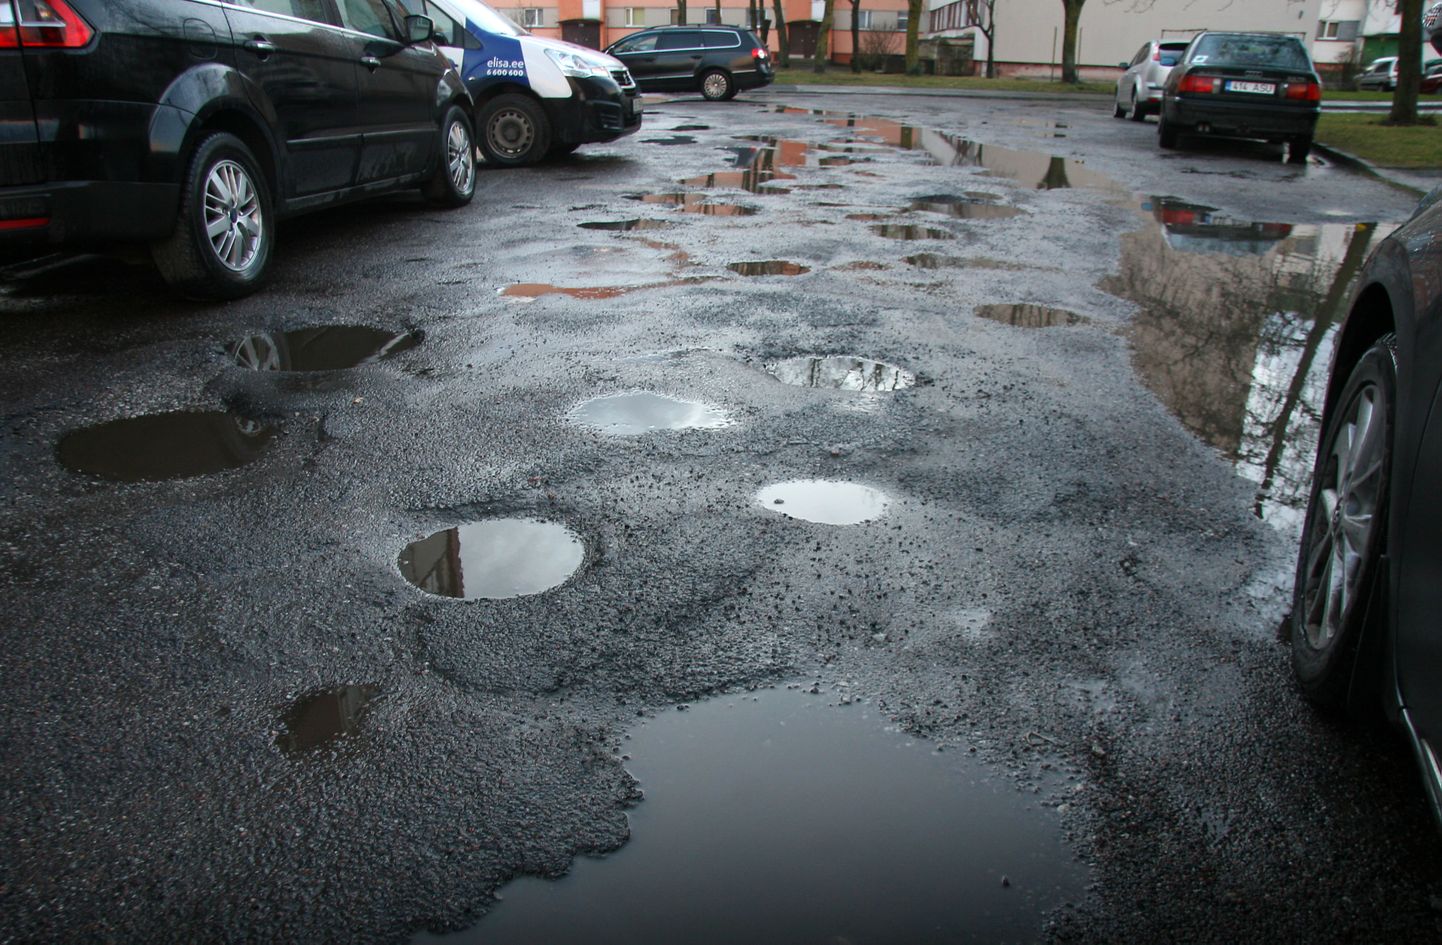 Таких внутриквартальных дорог в Ахтме и других частях Кохтла-Ярве много, и городские власти надеются, что с помощью новых пособий картина станет меняться быстрее.